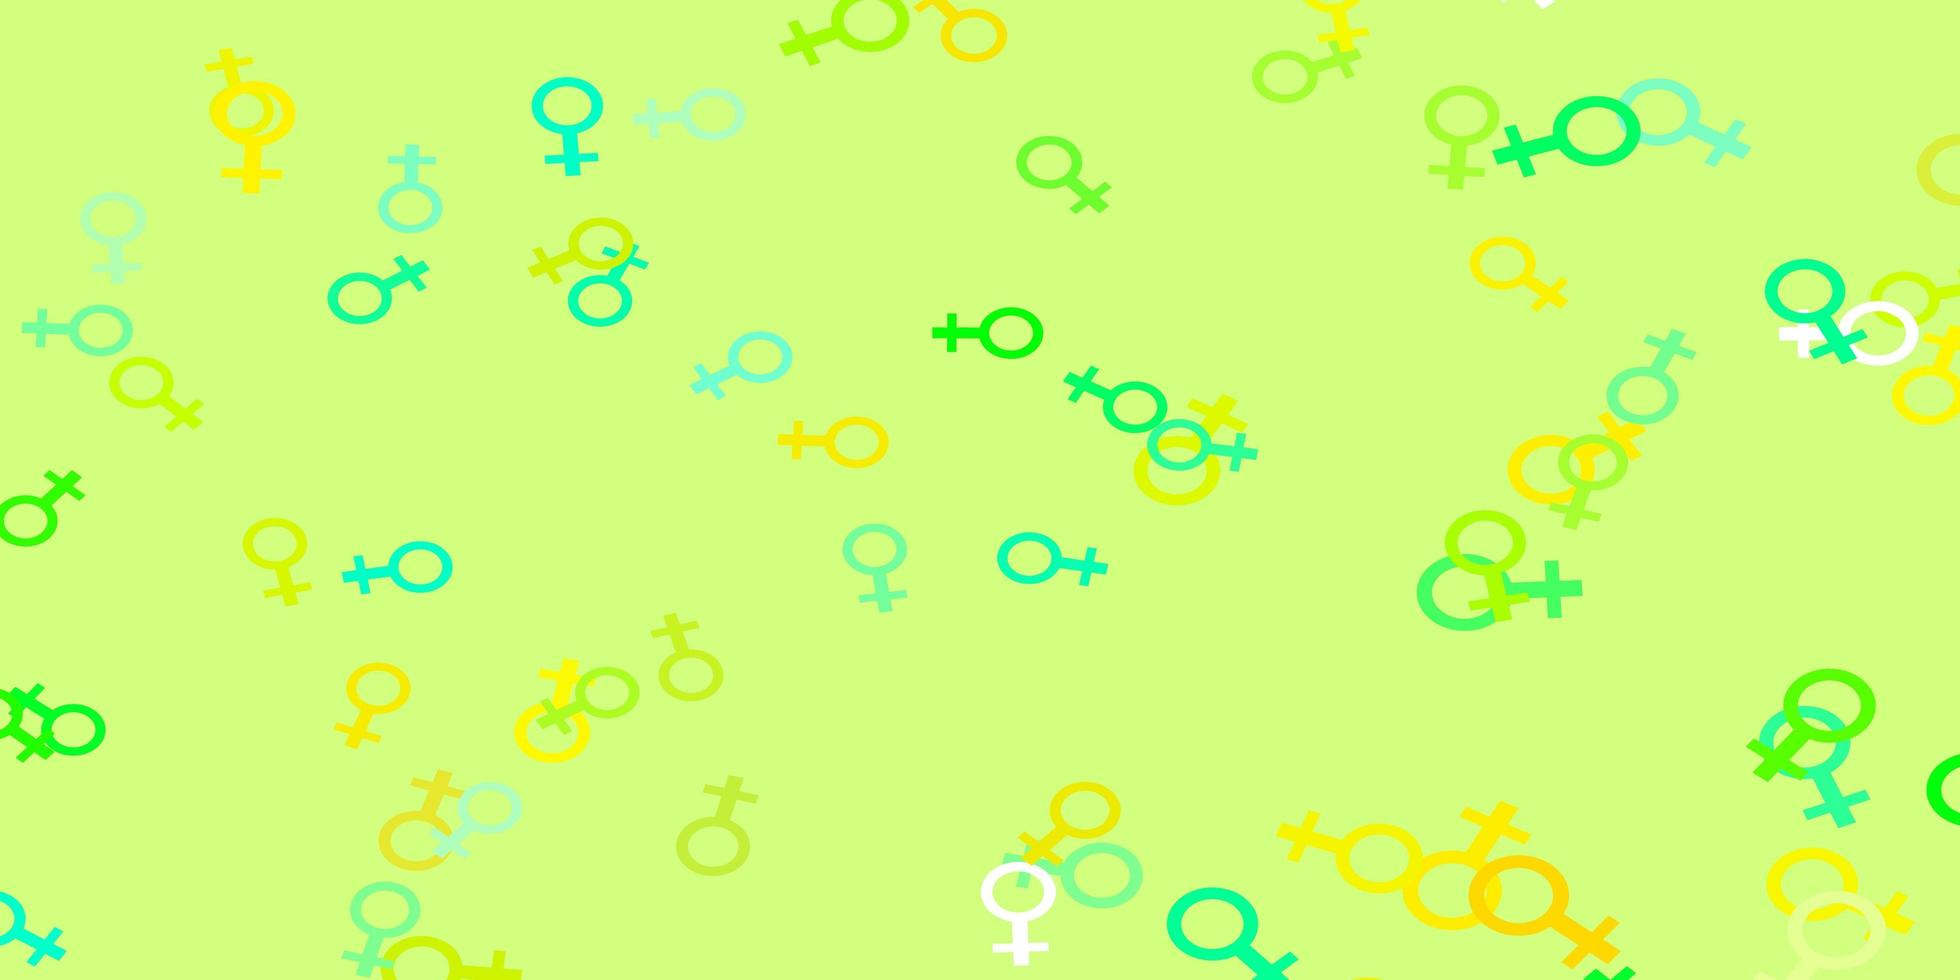 padrão de vetor verde e amarelo claro com elementos do feminismo.